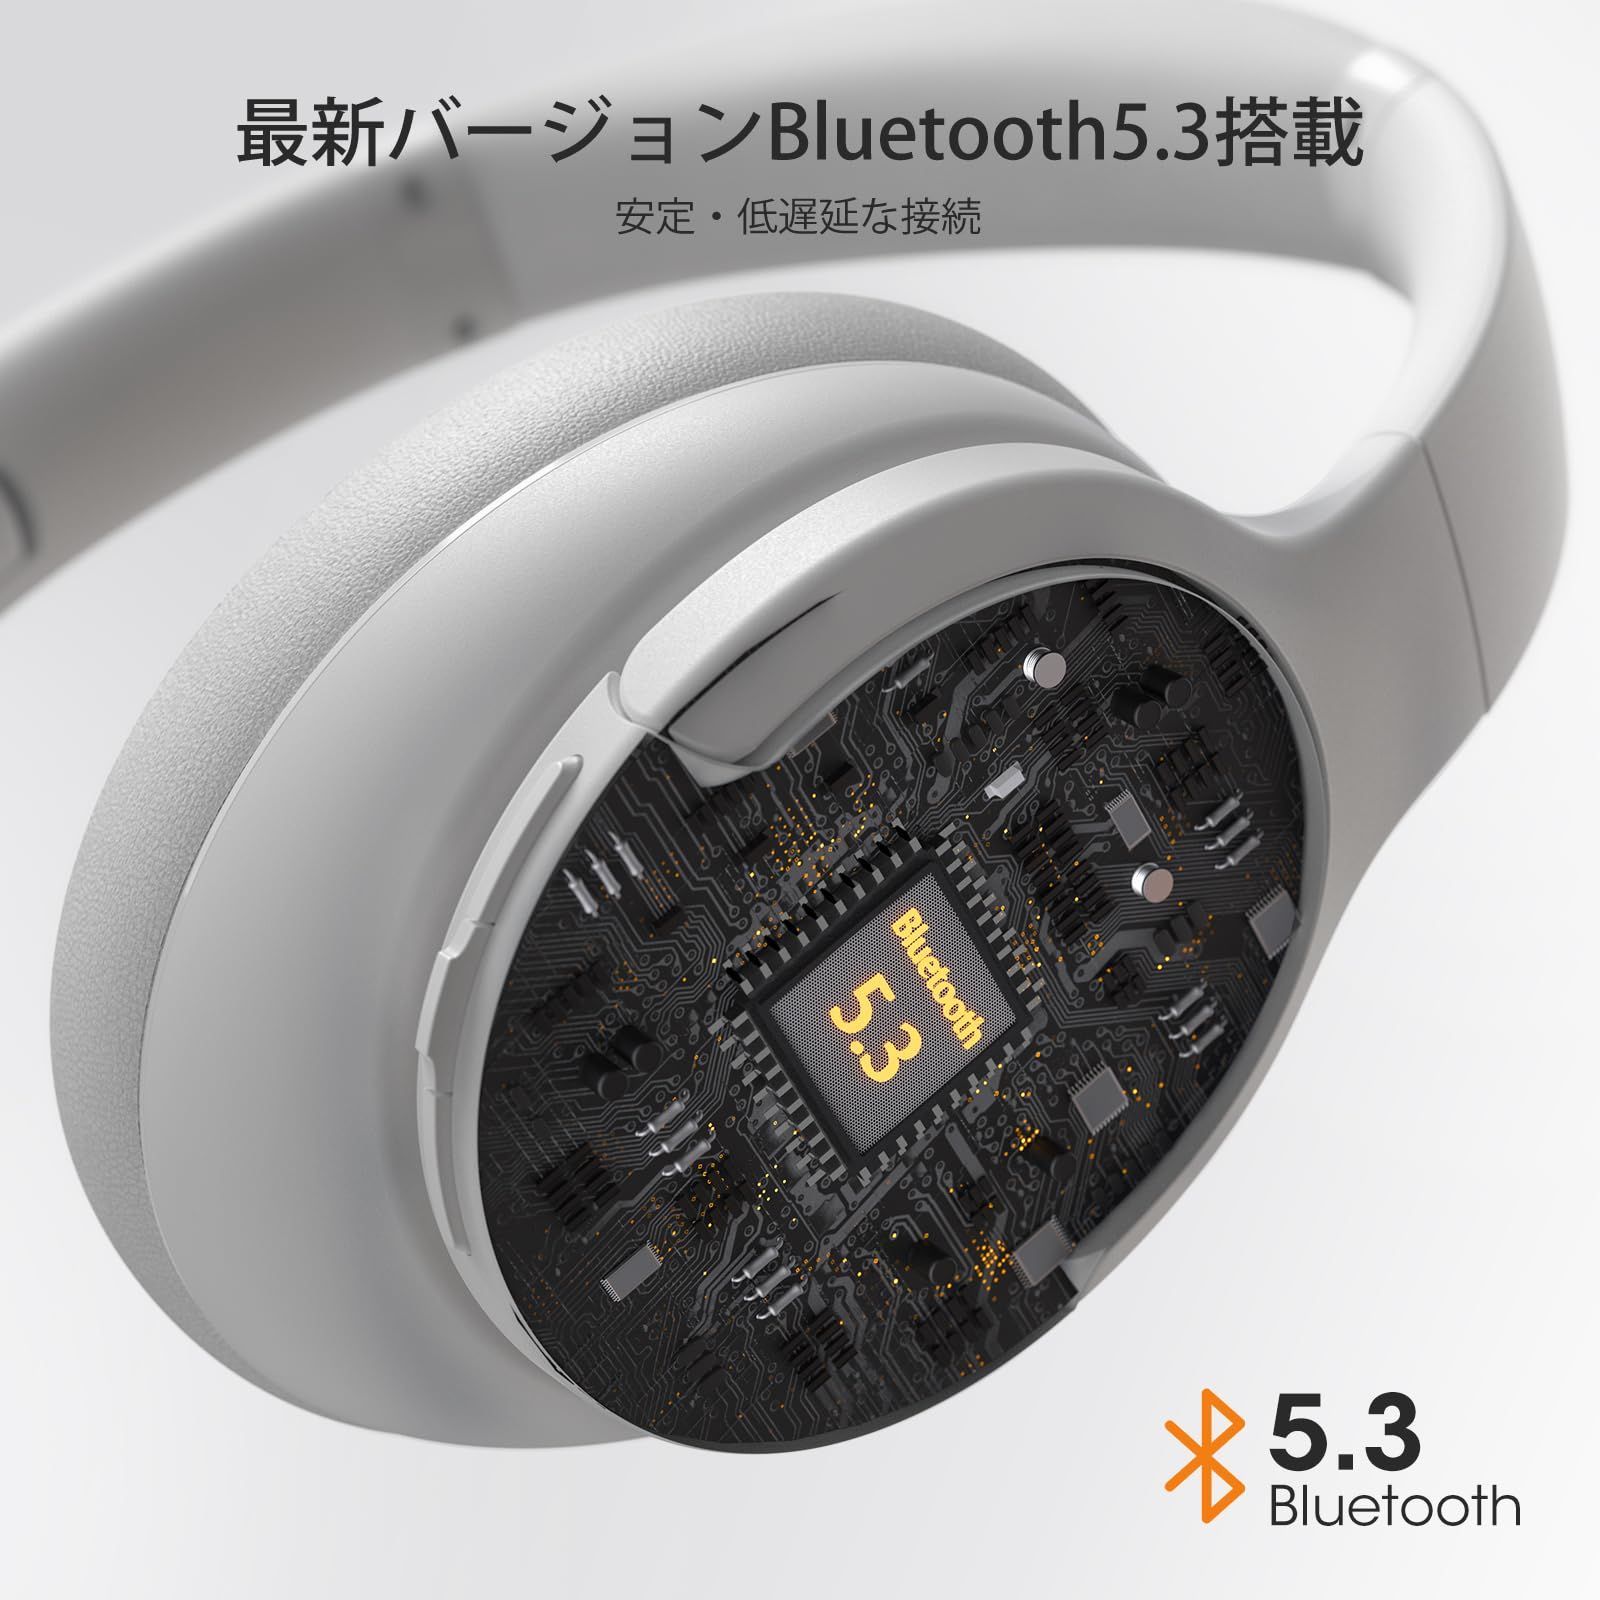 特価商品】Bluetooth5.3 ワイヤレスヘッドホン 最大9時間連続再生 USB